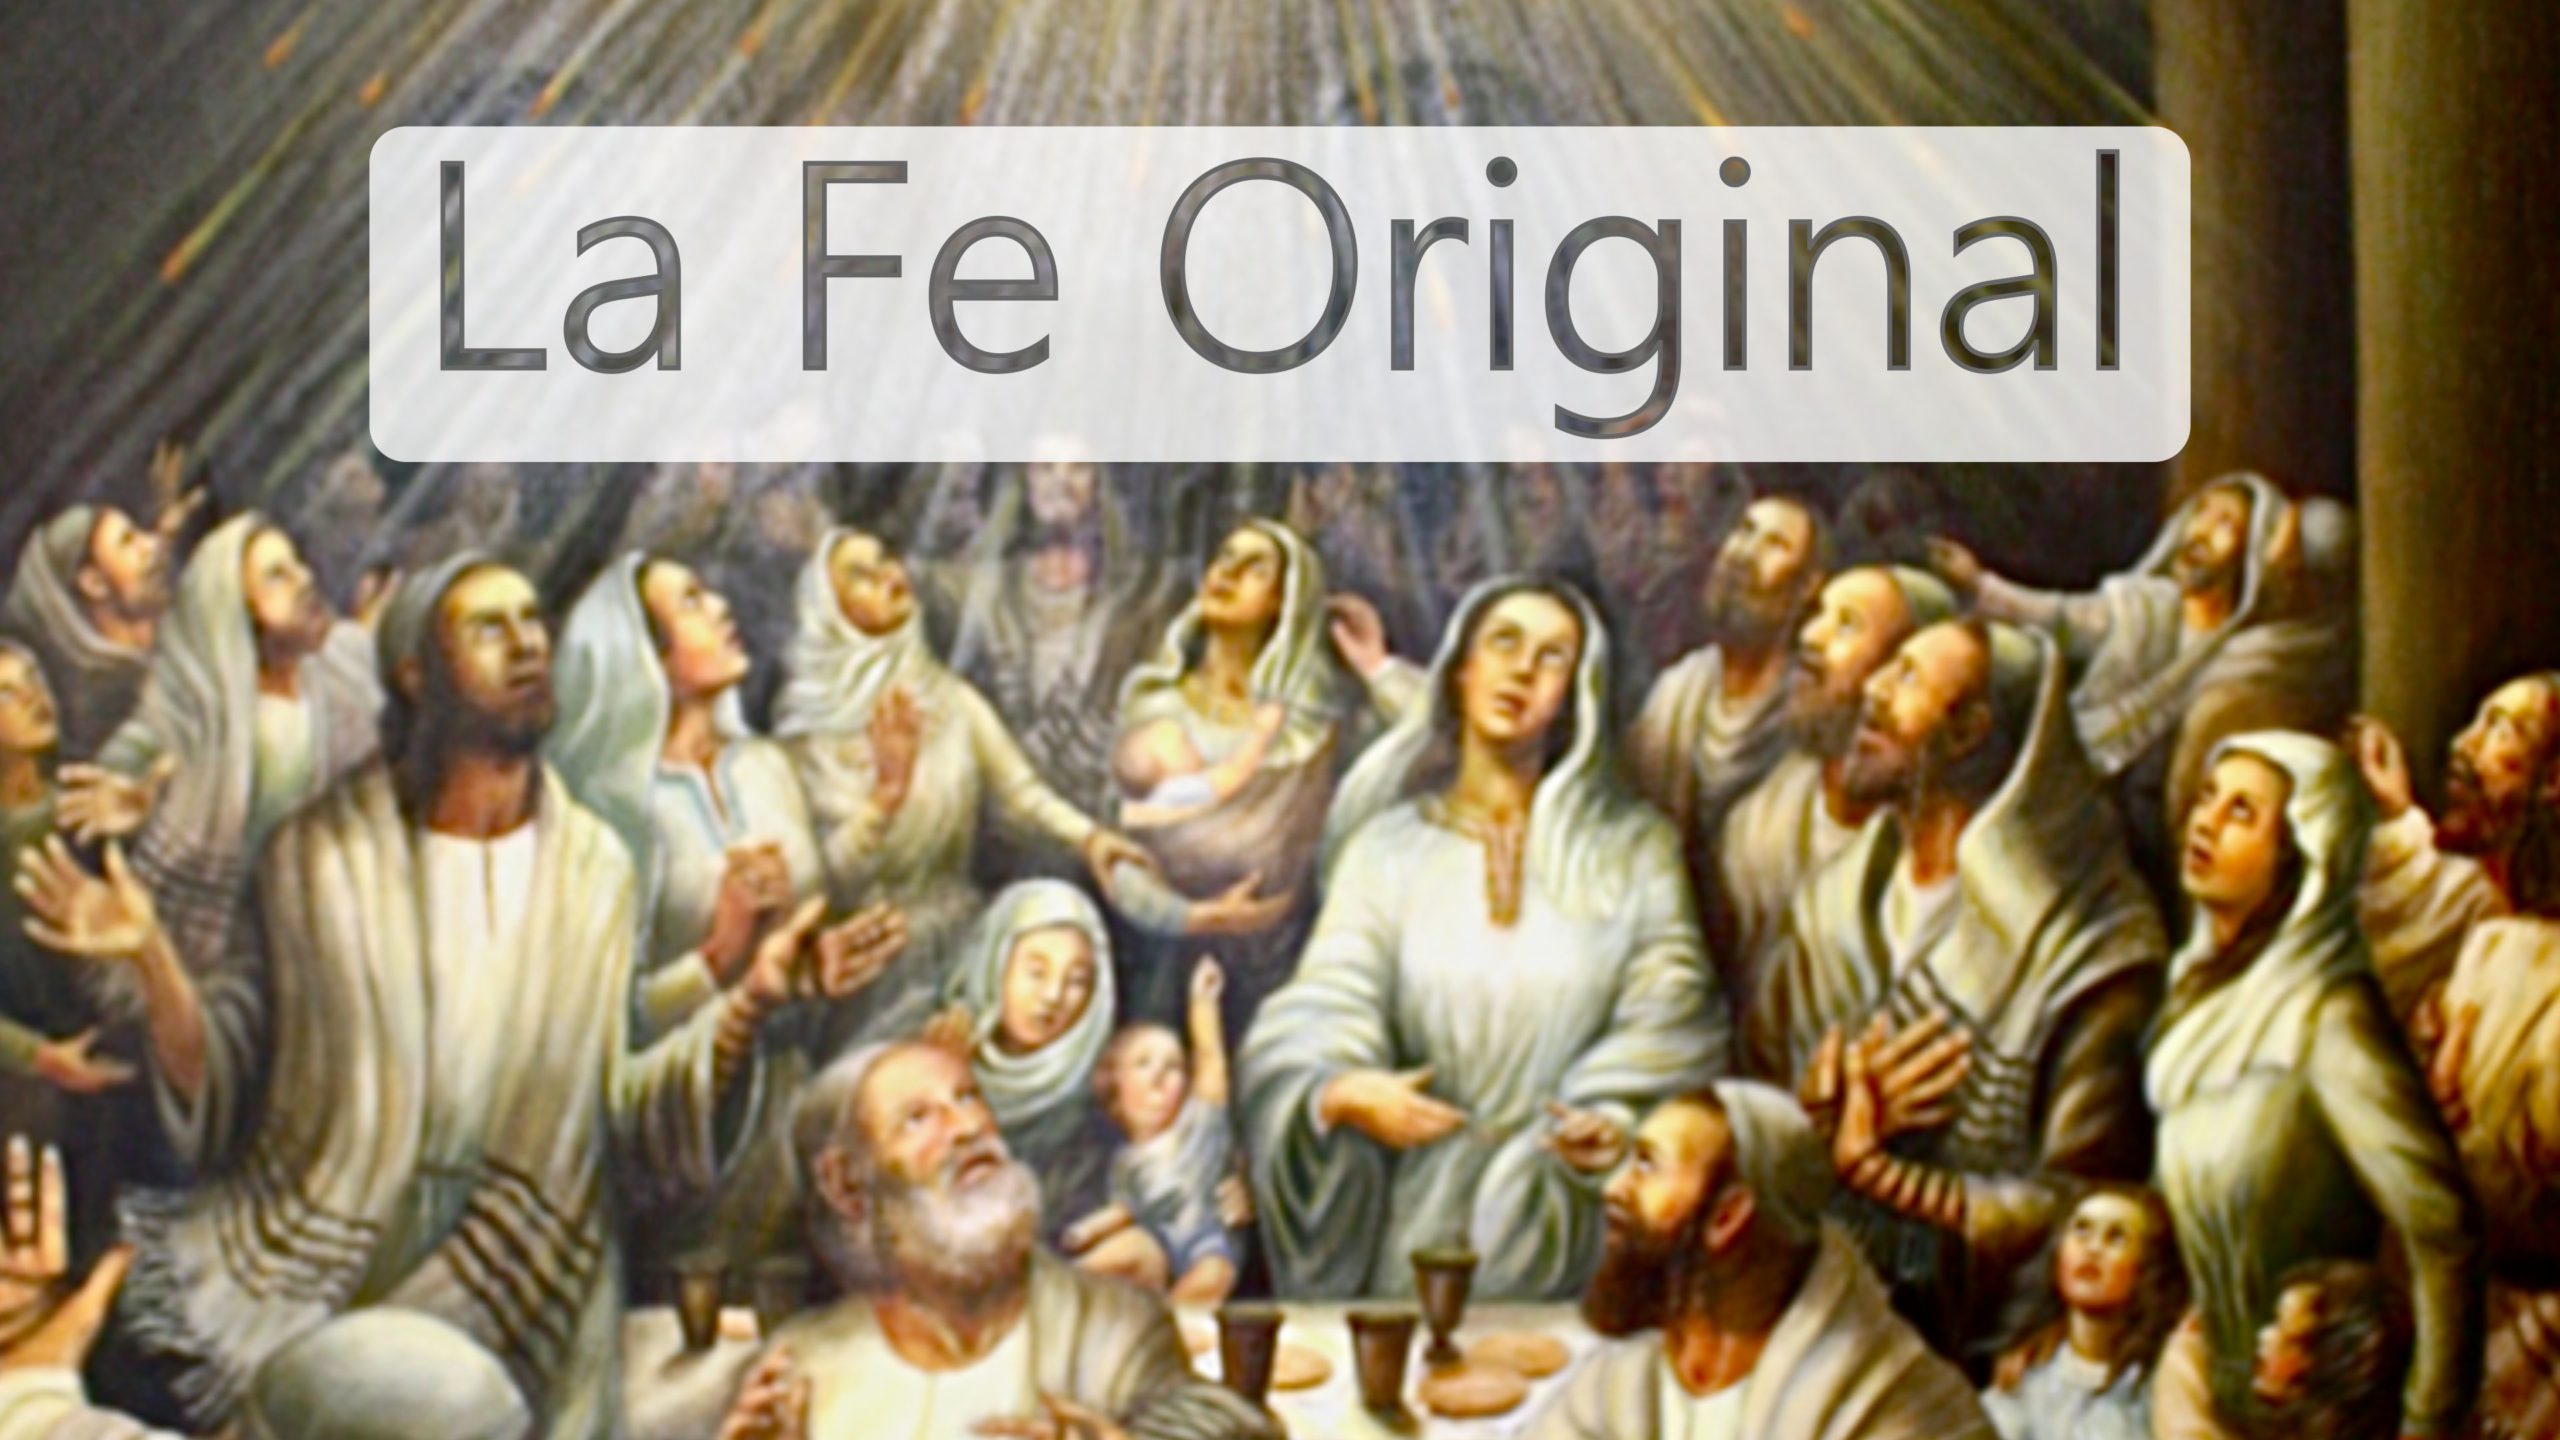 La Fe Original